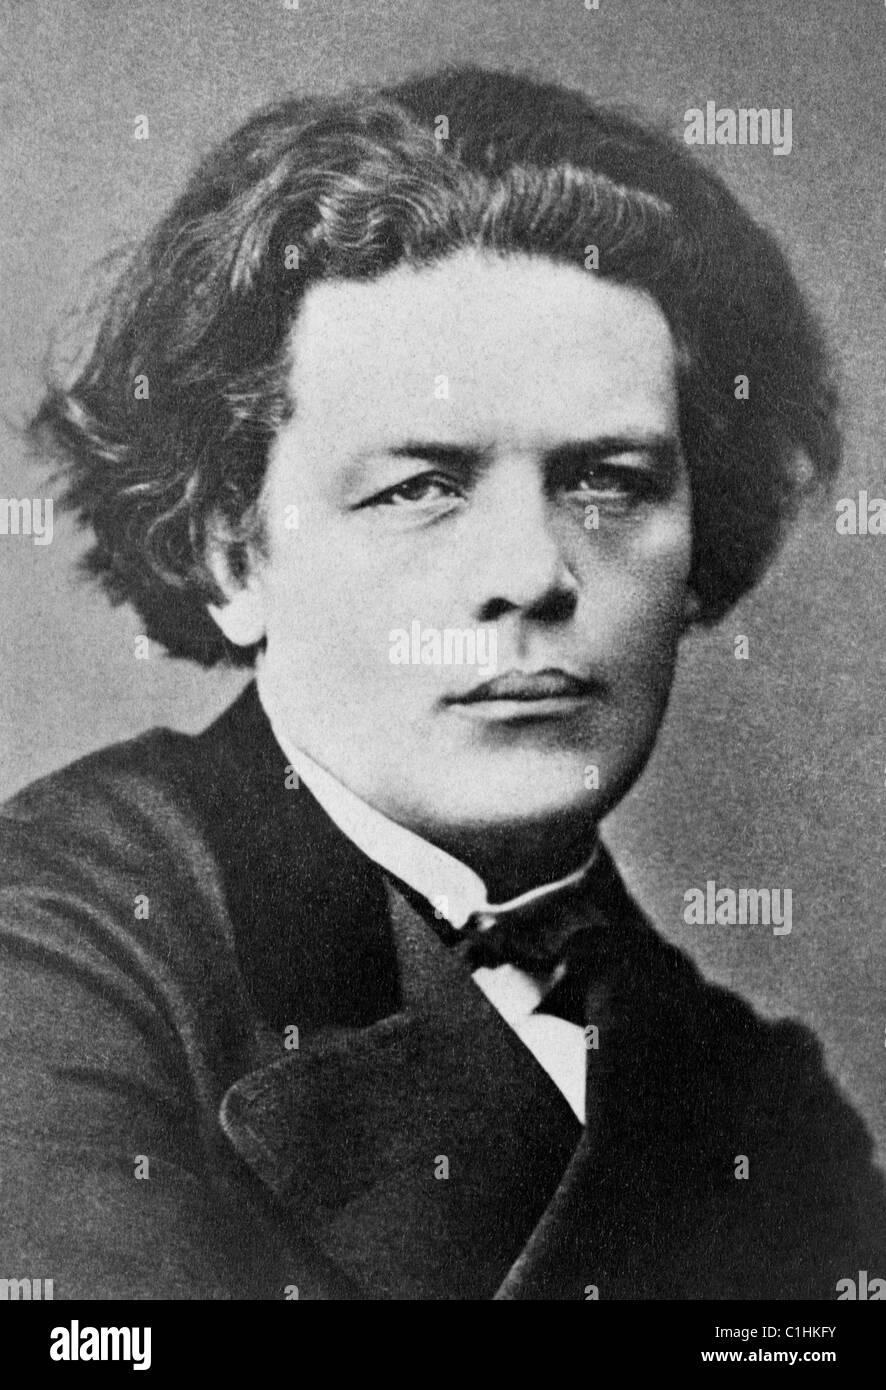 Photo de portrait vintage du pianiste, compositeur et chef d'orchestre russe Anton Rubinstein (1829 – 1894). Photo vers 1870. Banque D'Images